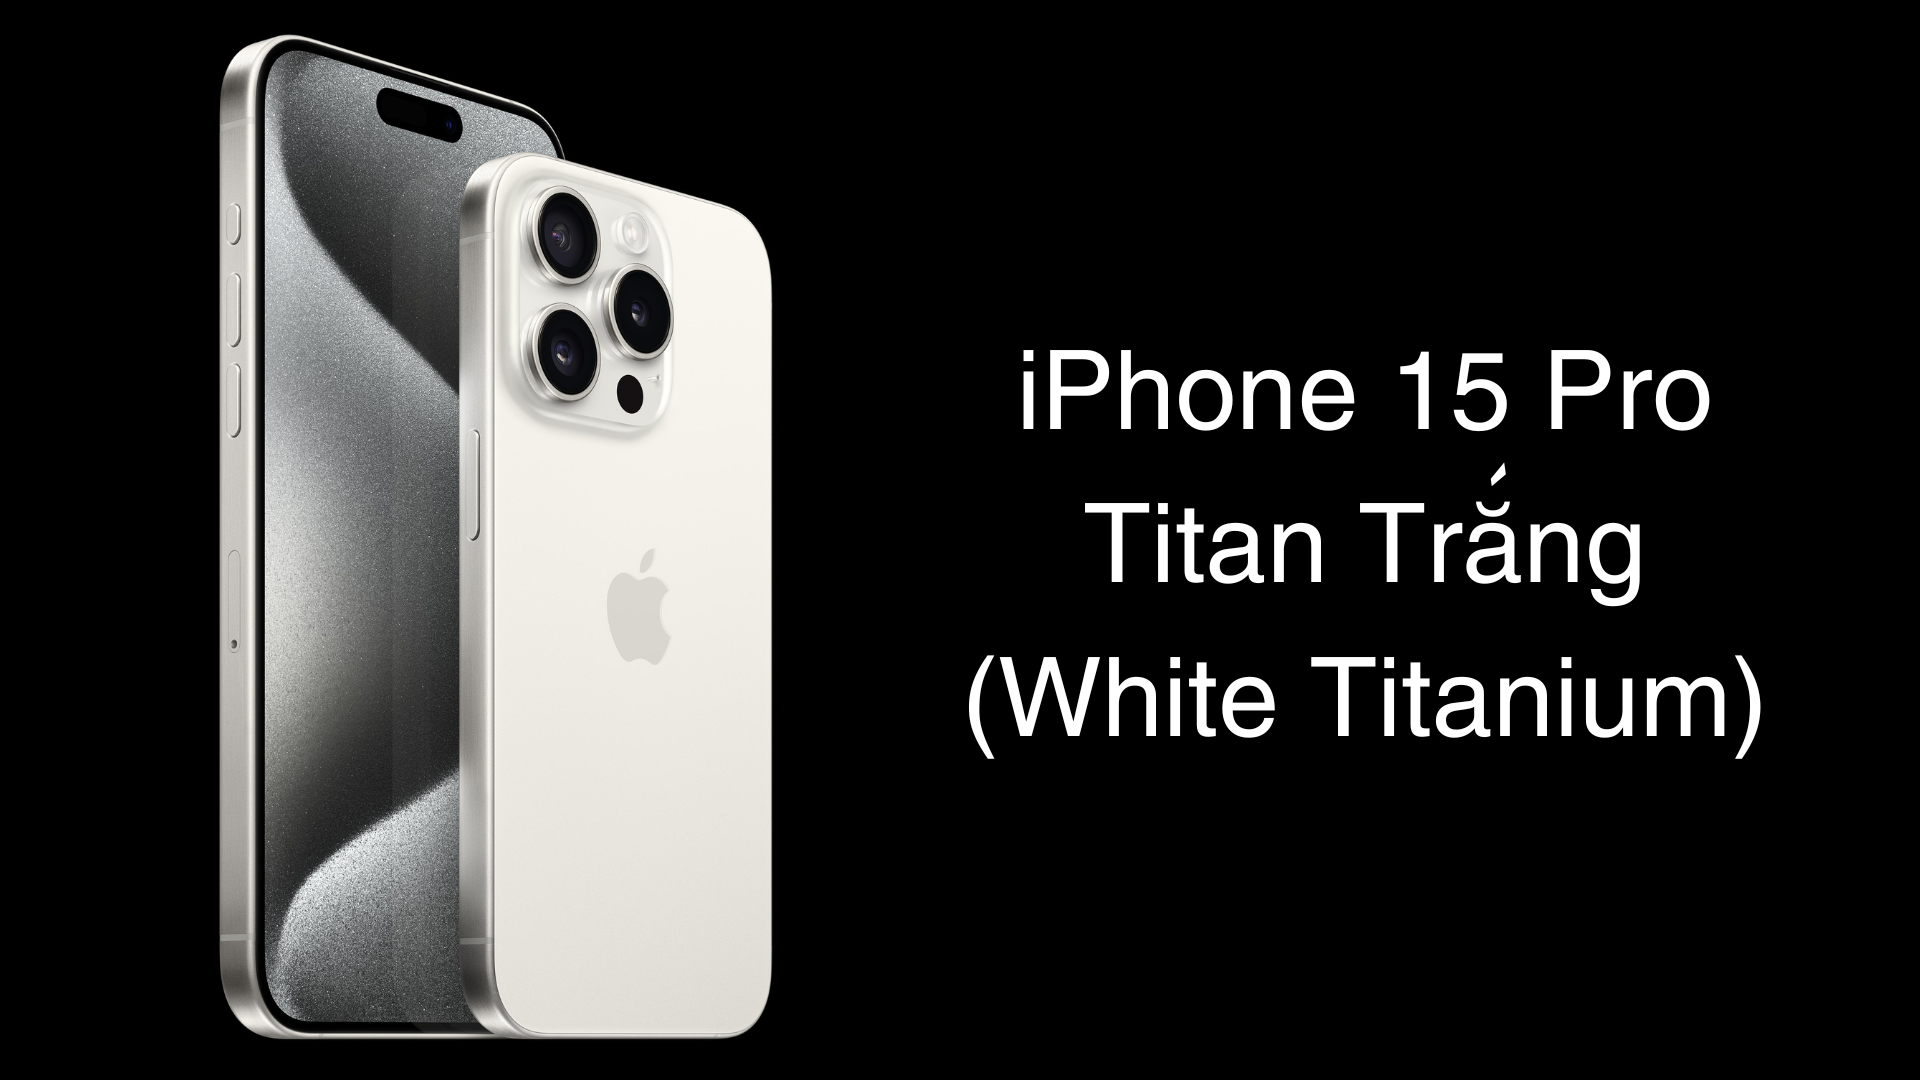 iPhone 15 Pro màu Titan Trắng với sắc trắng thanh lịch, trang nhã, phù hợp cho nhiều outfit thời thượng